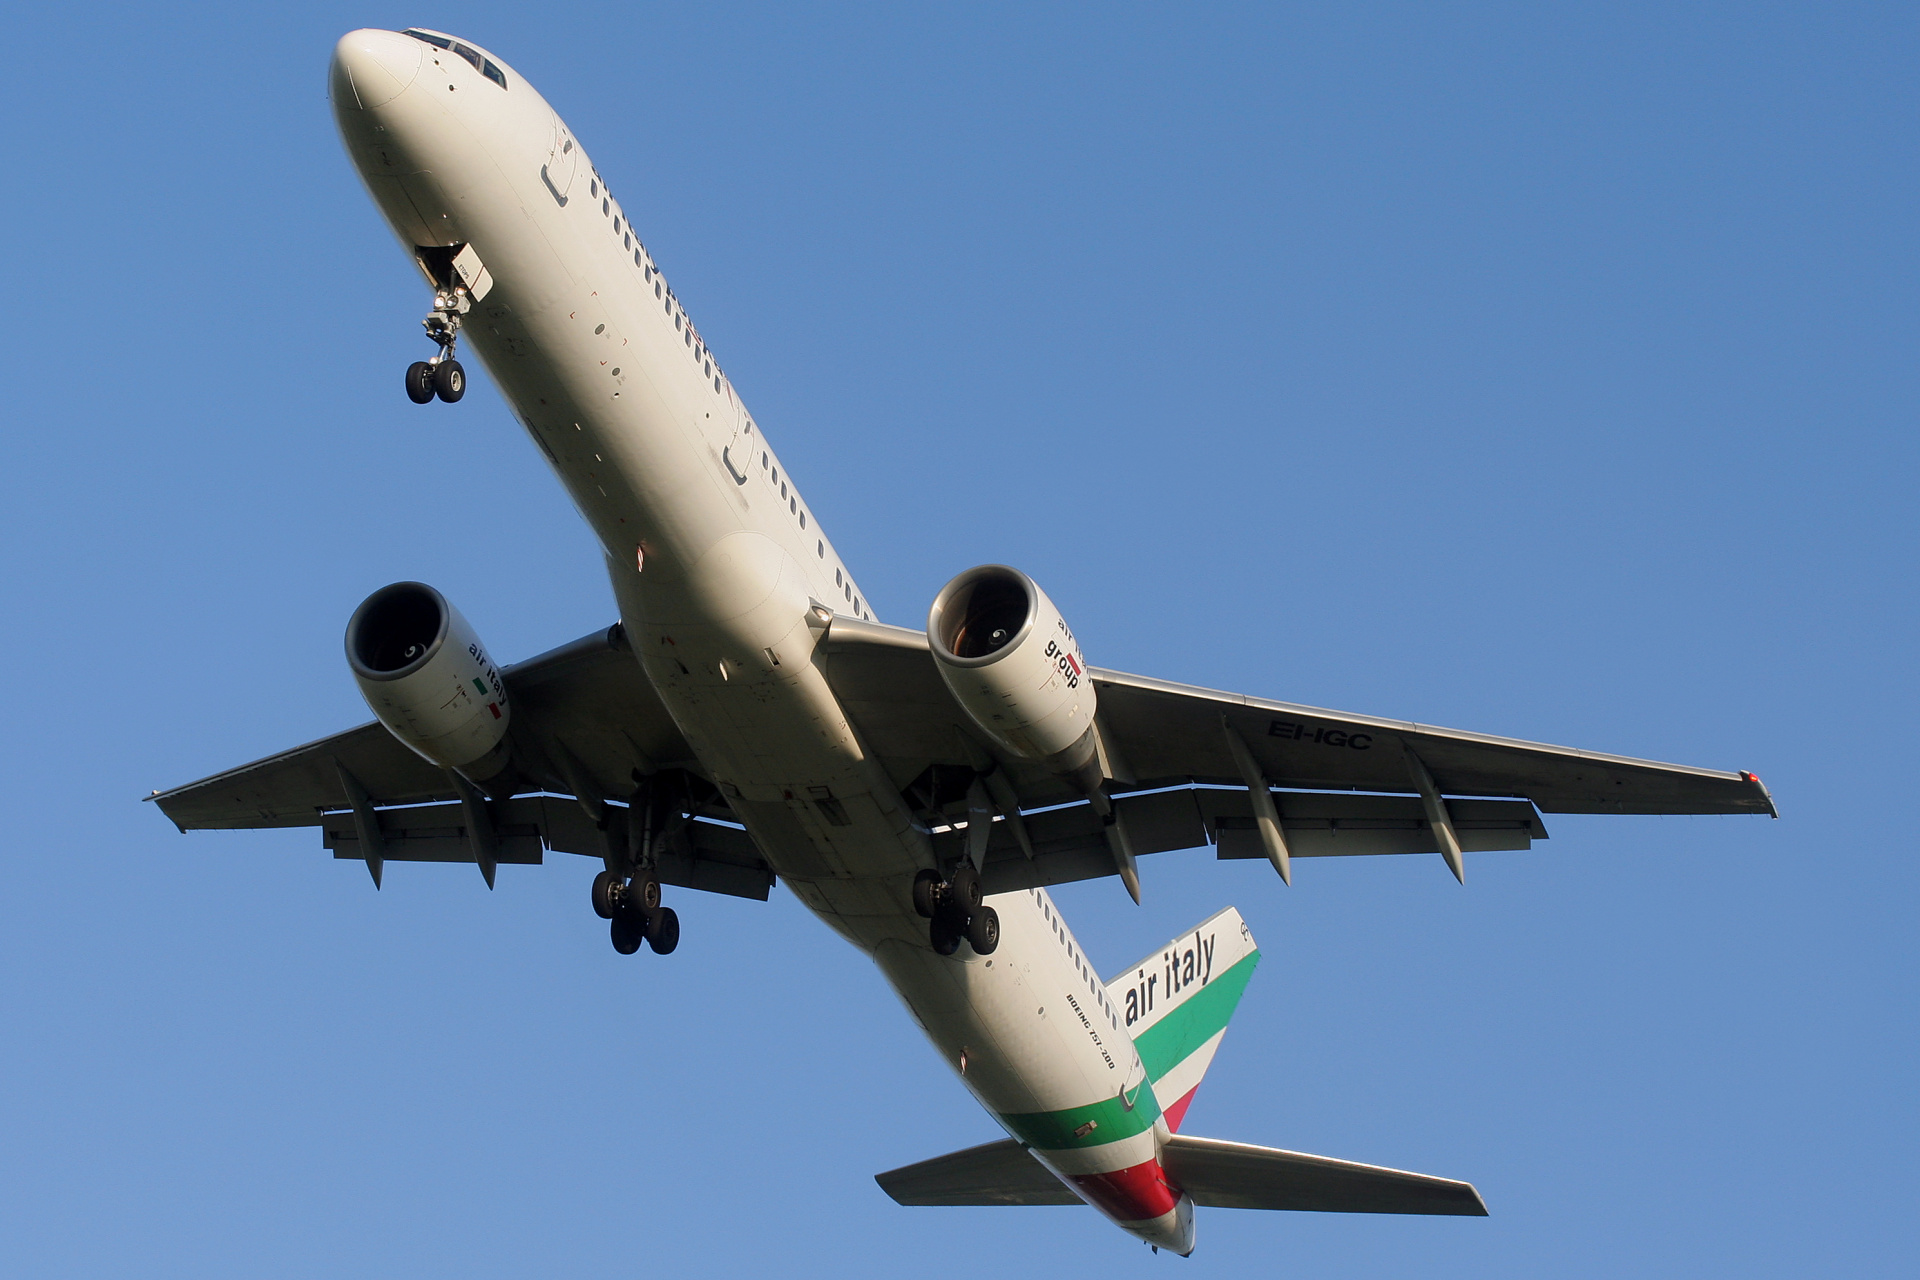 EI-IGC (Samoloty » Spotting na EPWA » Boeing 757-200 » Air Italy Polska)